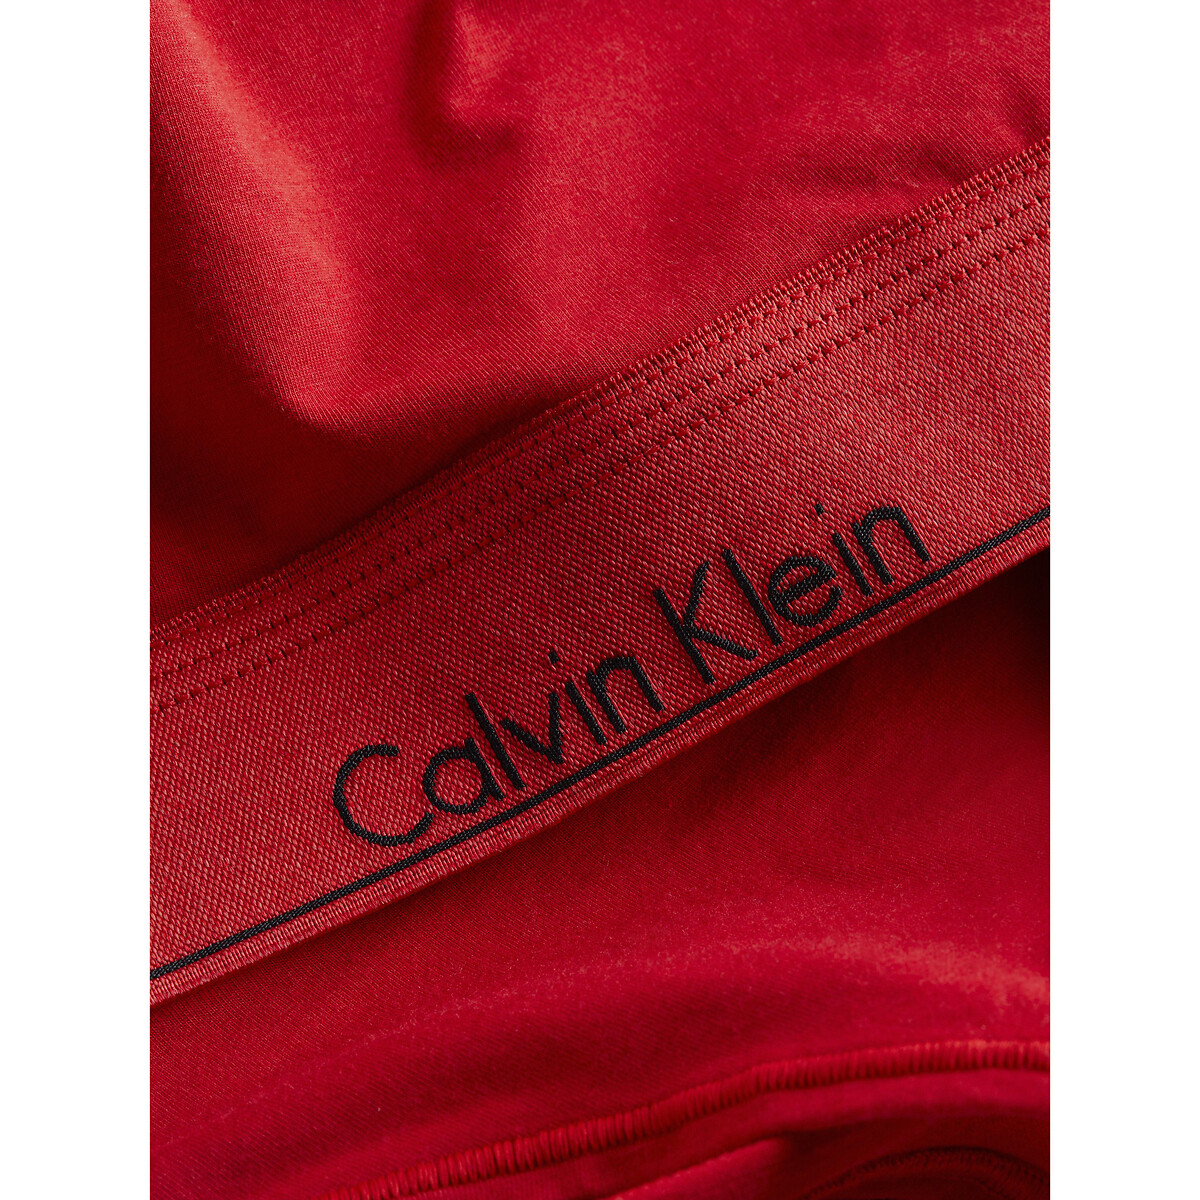 Calvin Klein Modern Cotton Holiday Bralette, Rouge, XS